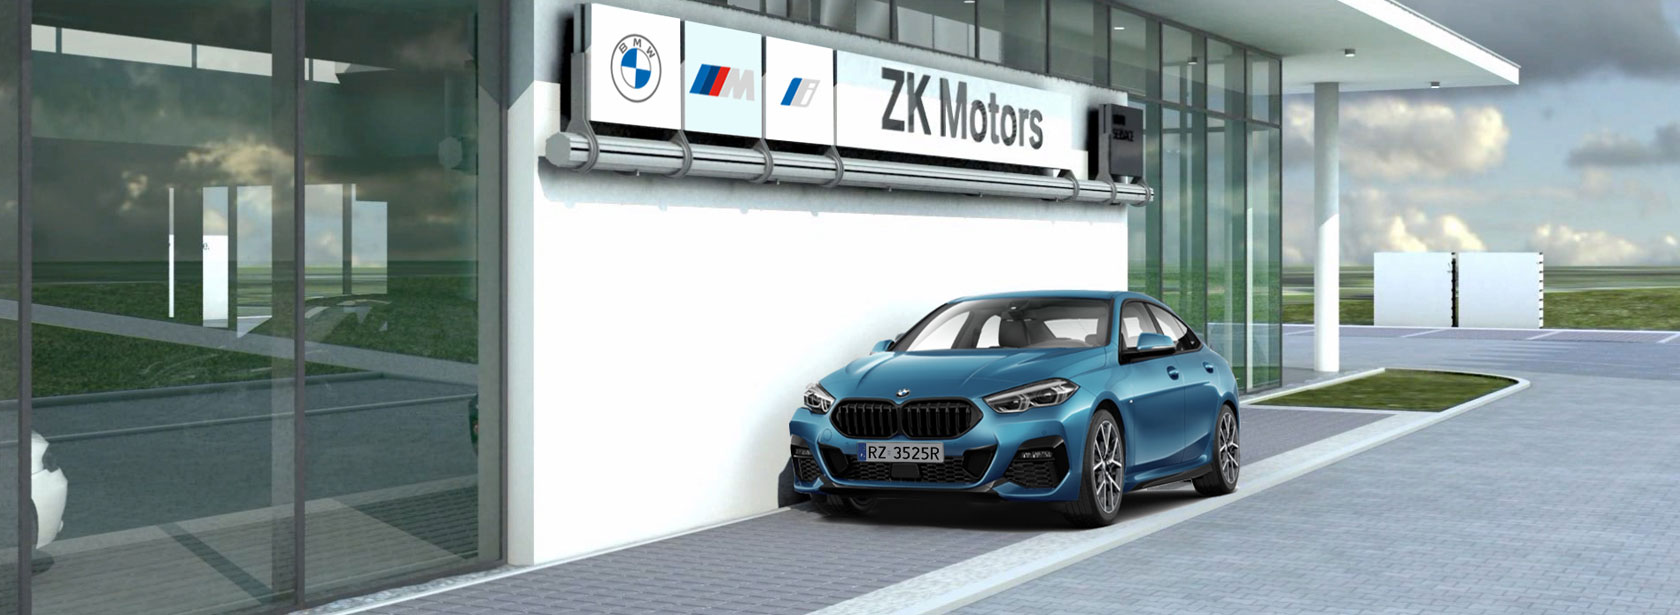 Kontakt Dealer BMW ZK Motors Rzeszów